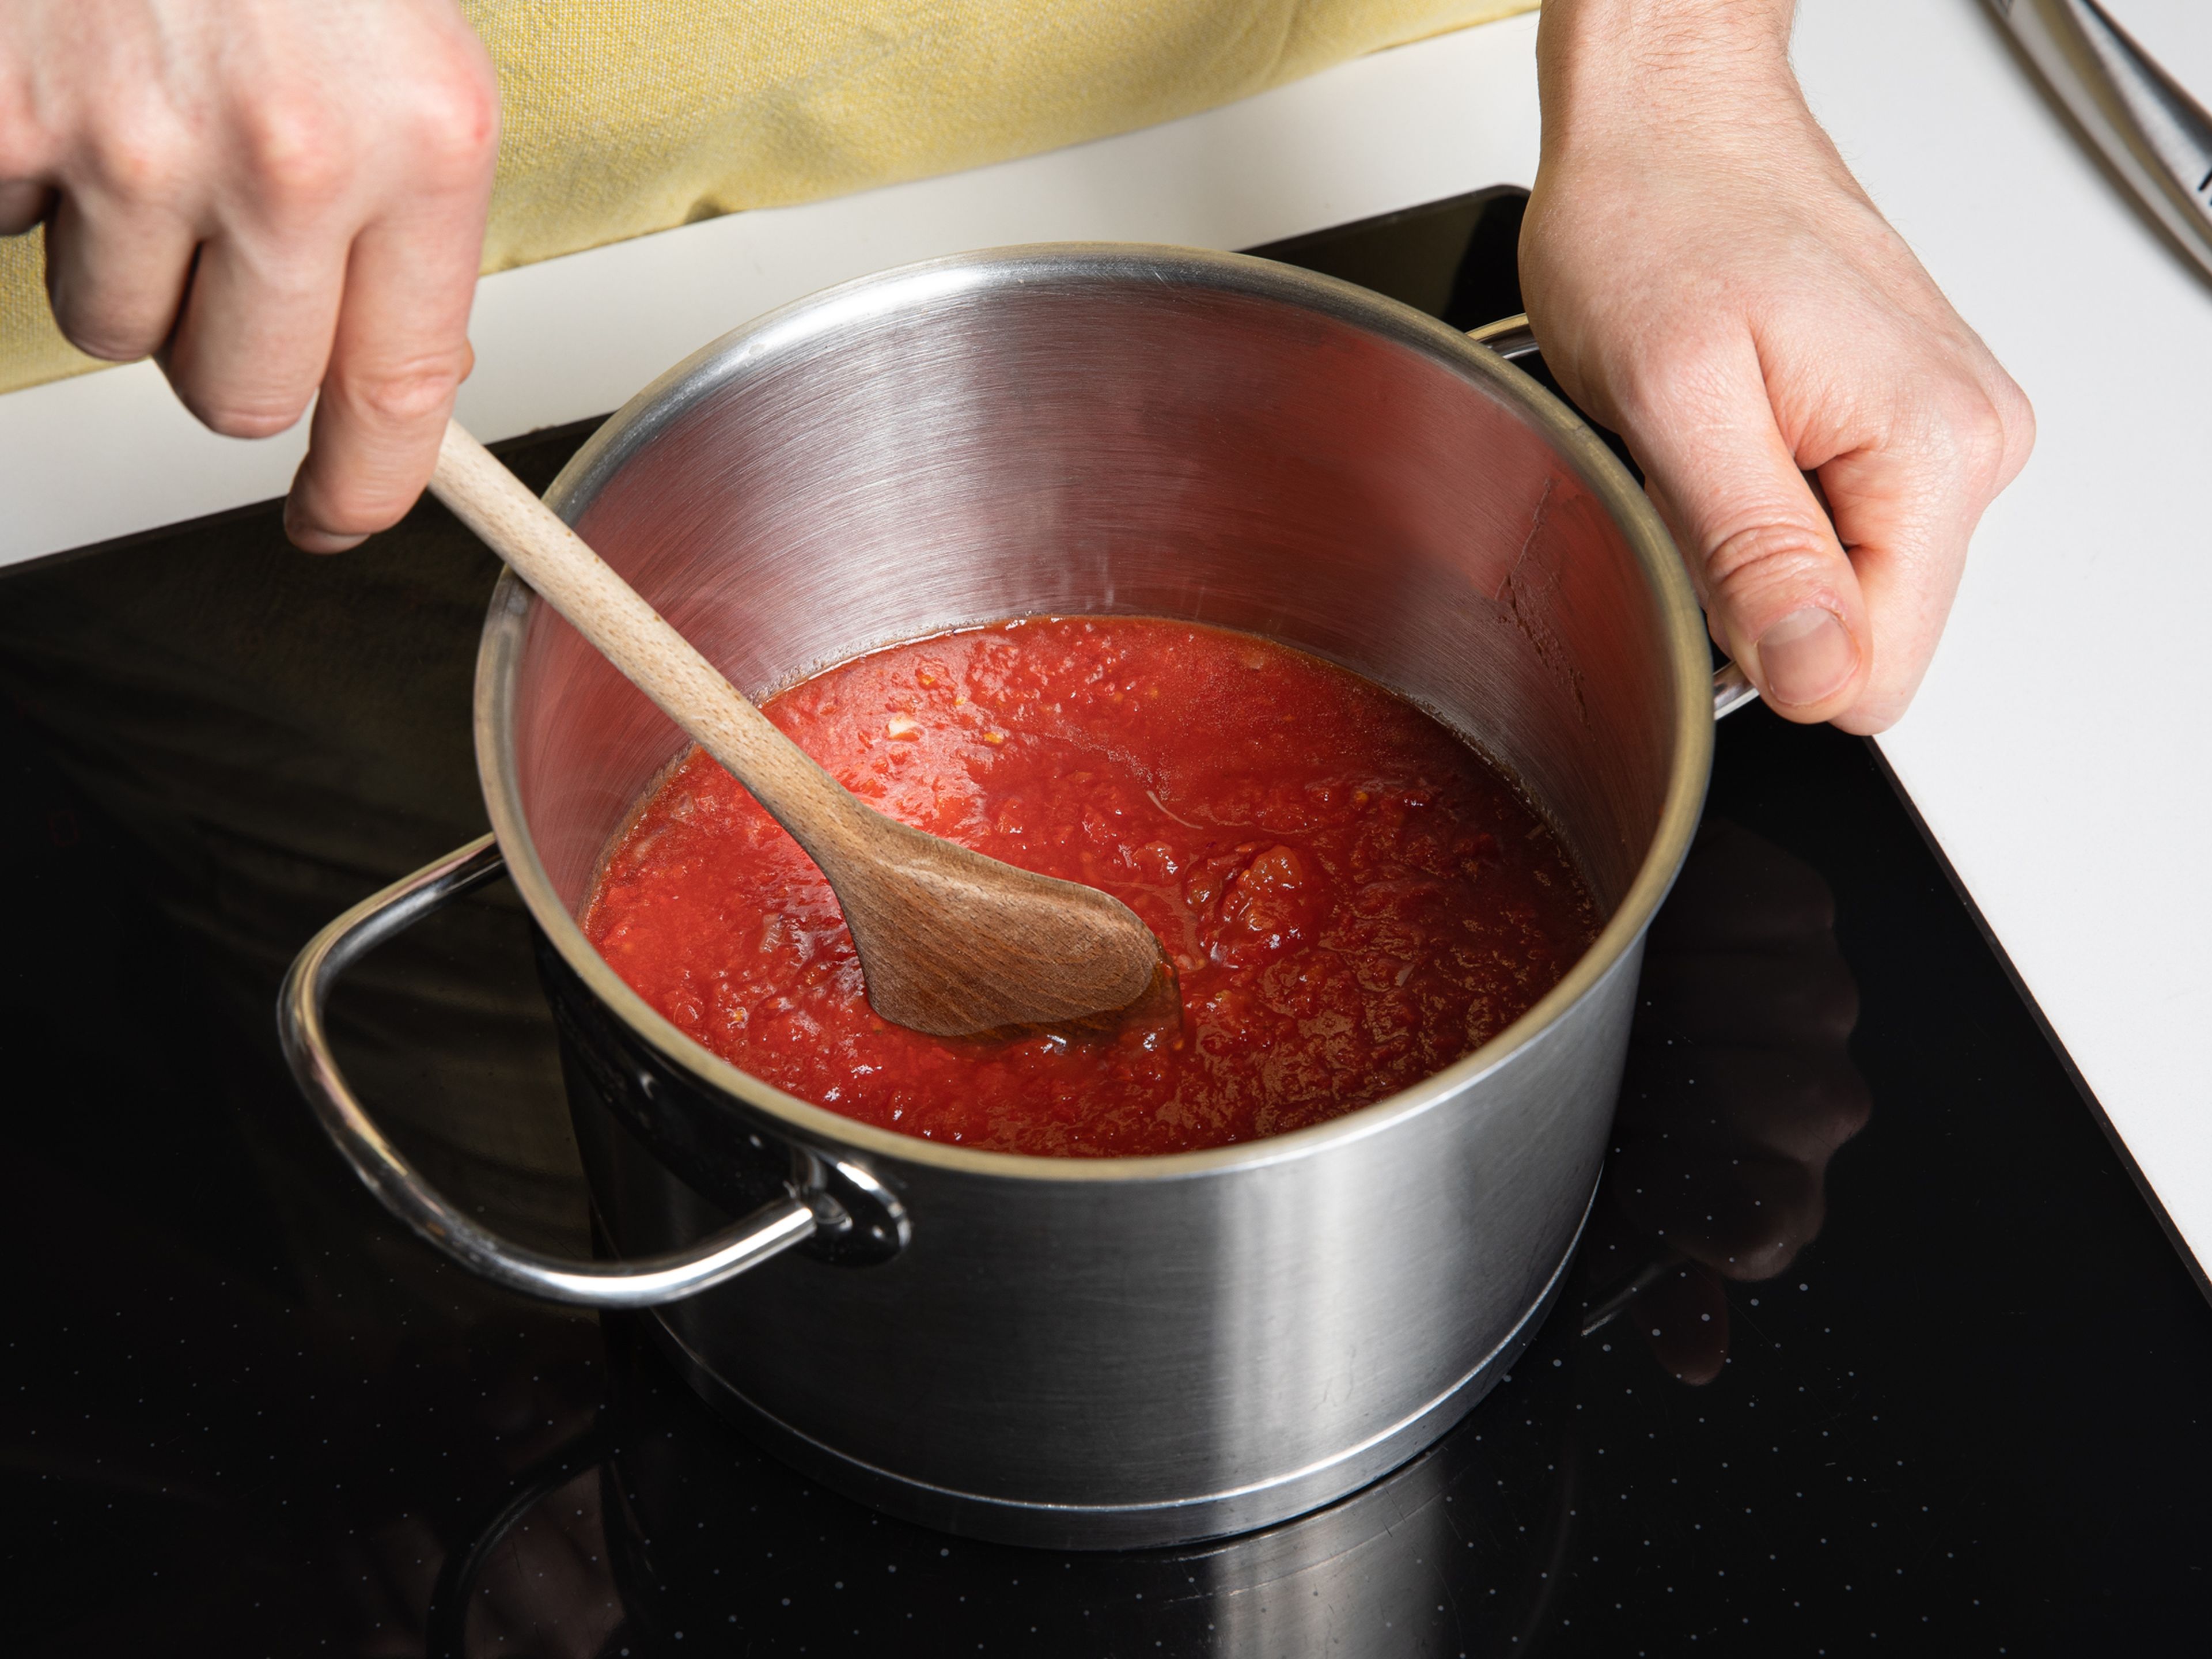 Olivenöl in einer tiefen Pfanne oder einem Topf bei mittlerer Hitze erwärmen. Gehackte Zwiebel und Knoblauch darin anschwitzen, bis die Zwiebel glasig ist. Tomaten aus der Dose dazugeben und die Soße köcheln lassen, bis sie andickt. Mit Salz und Pfeffer abschmecken.